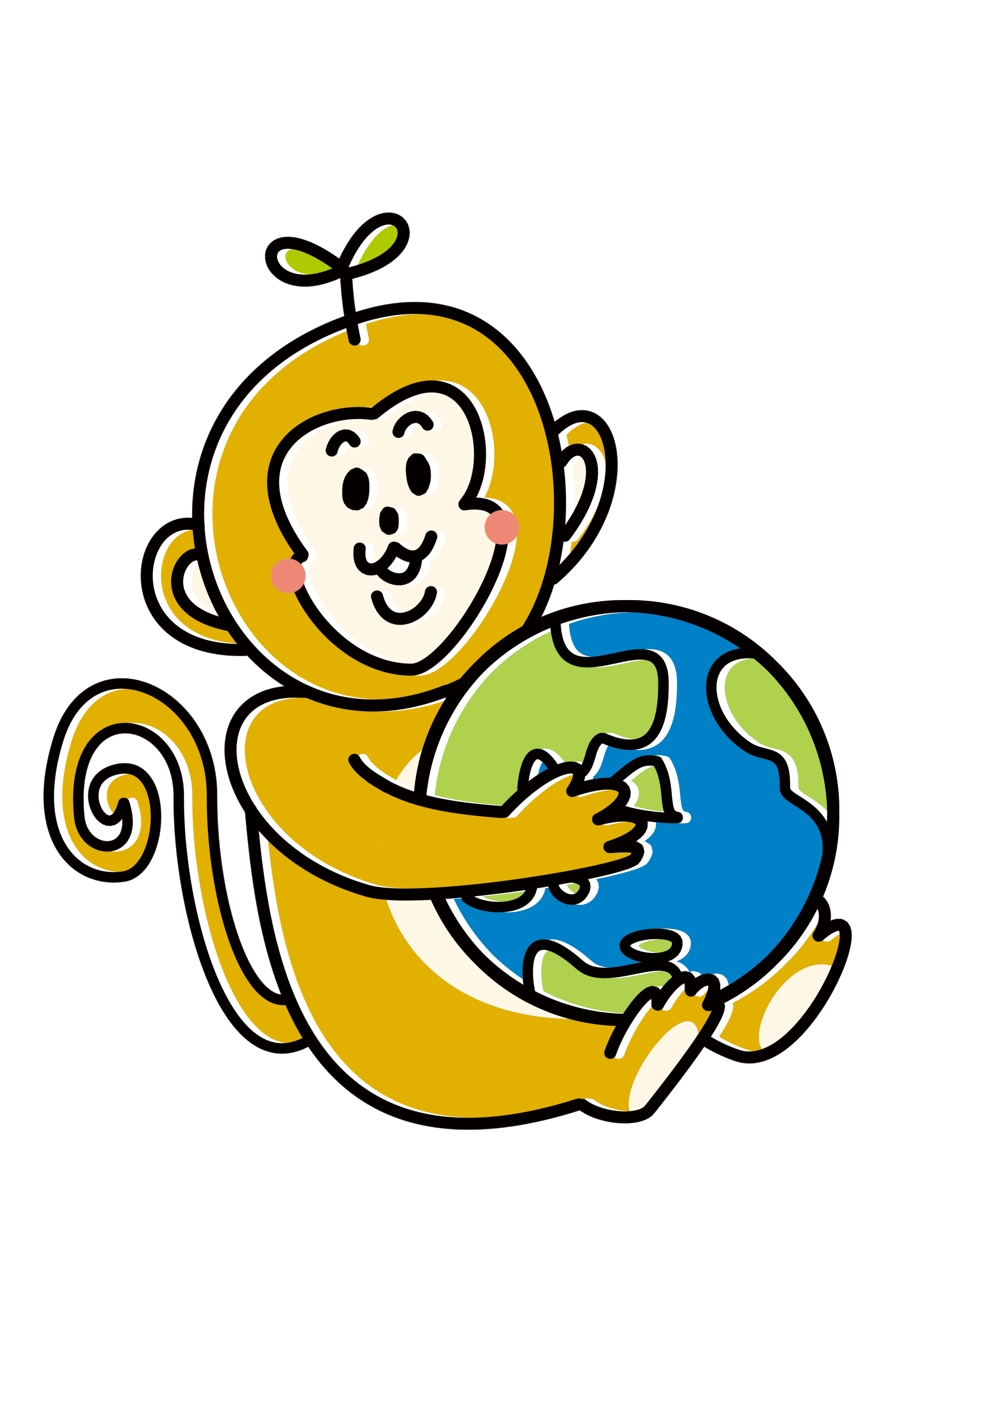 お猿さん01.png